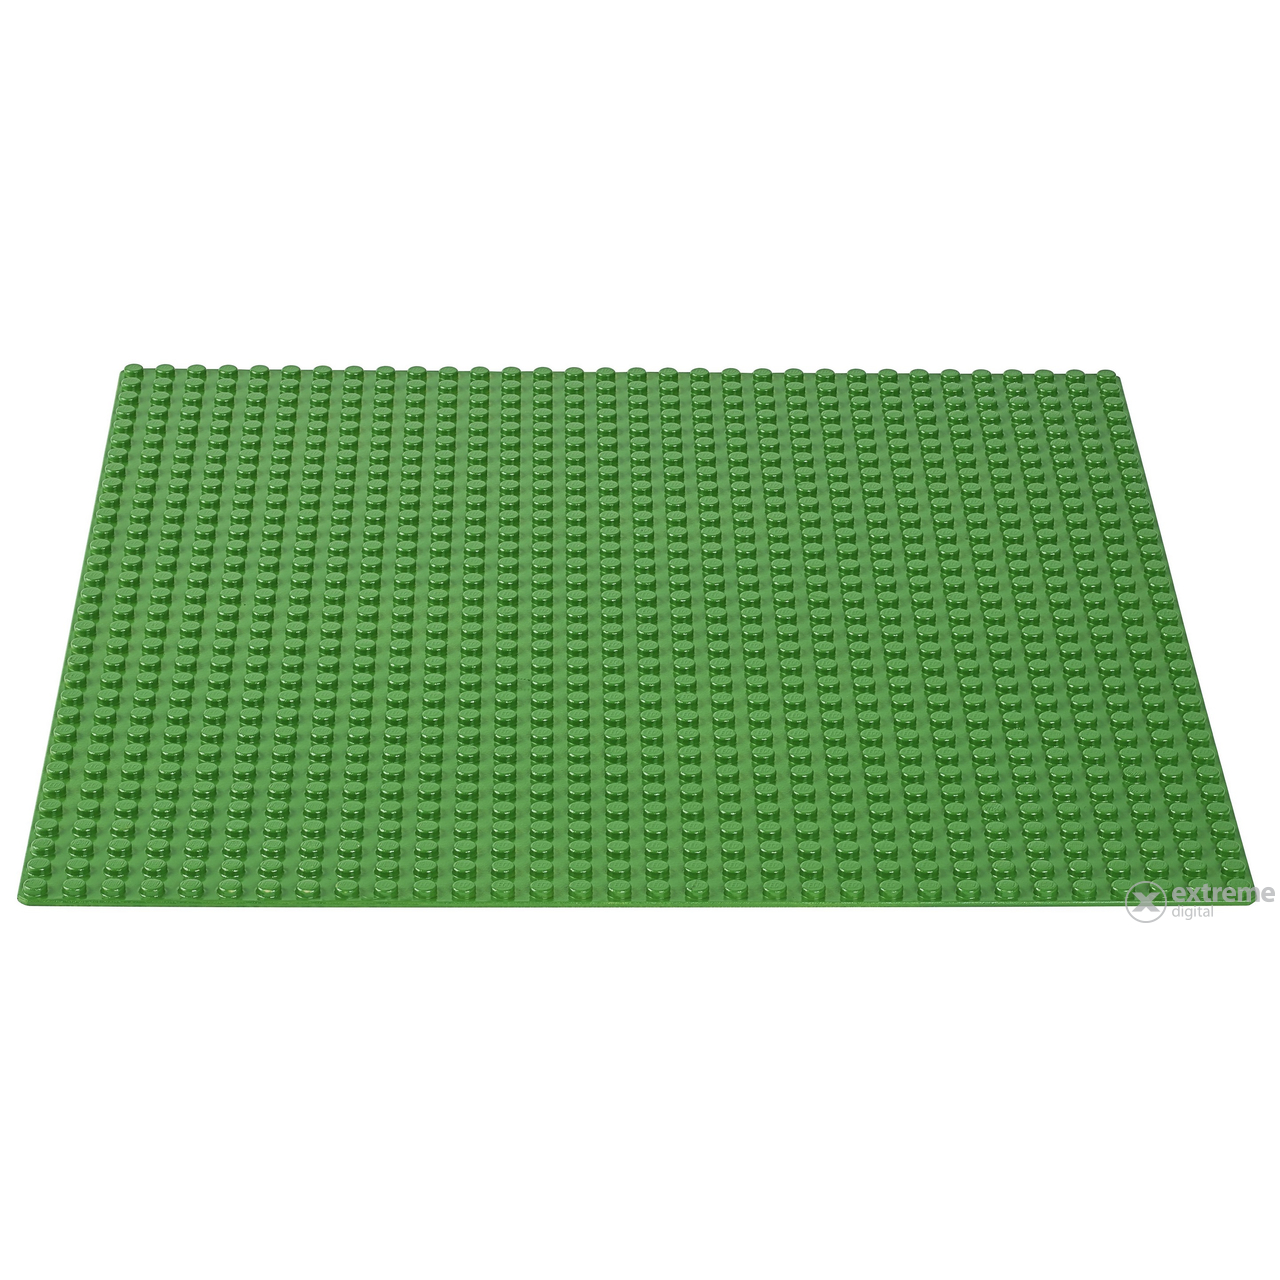 LEGO® Classic zelena podloga 10700